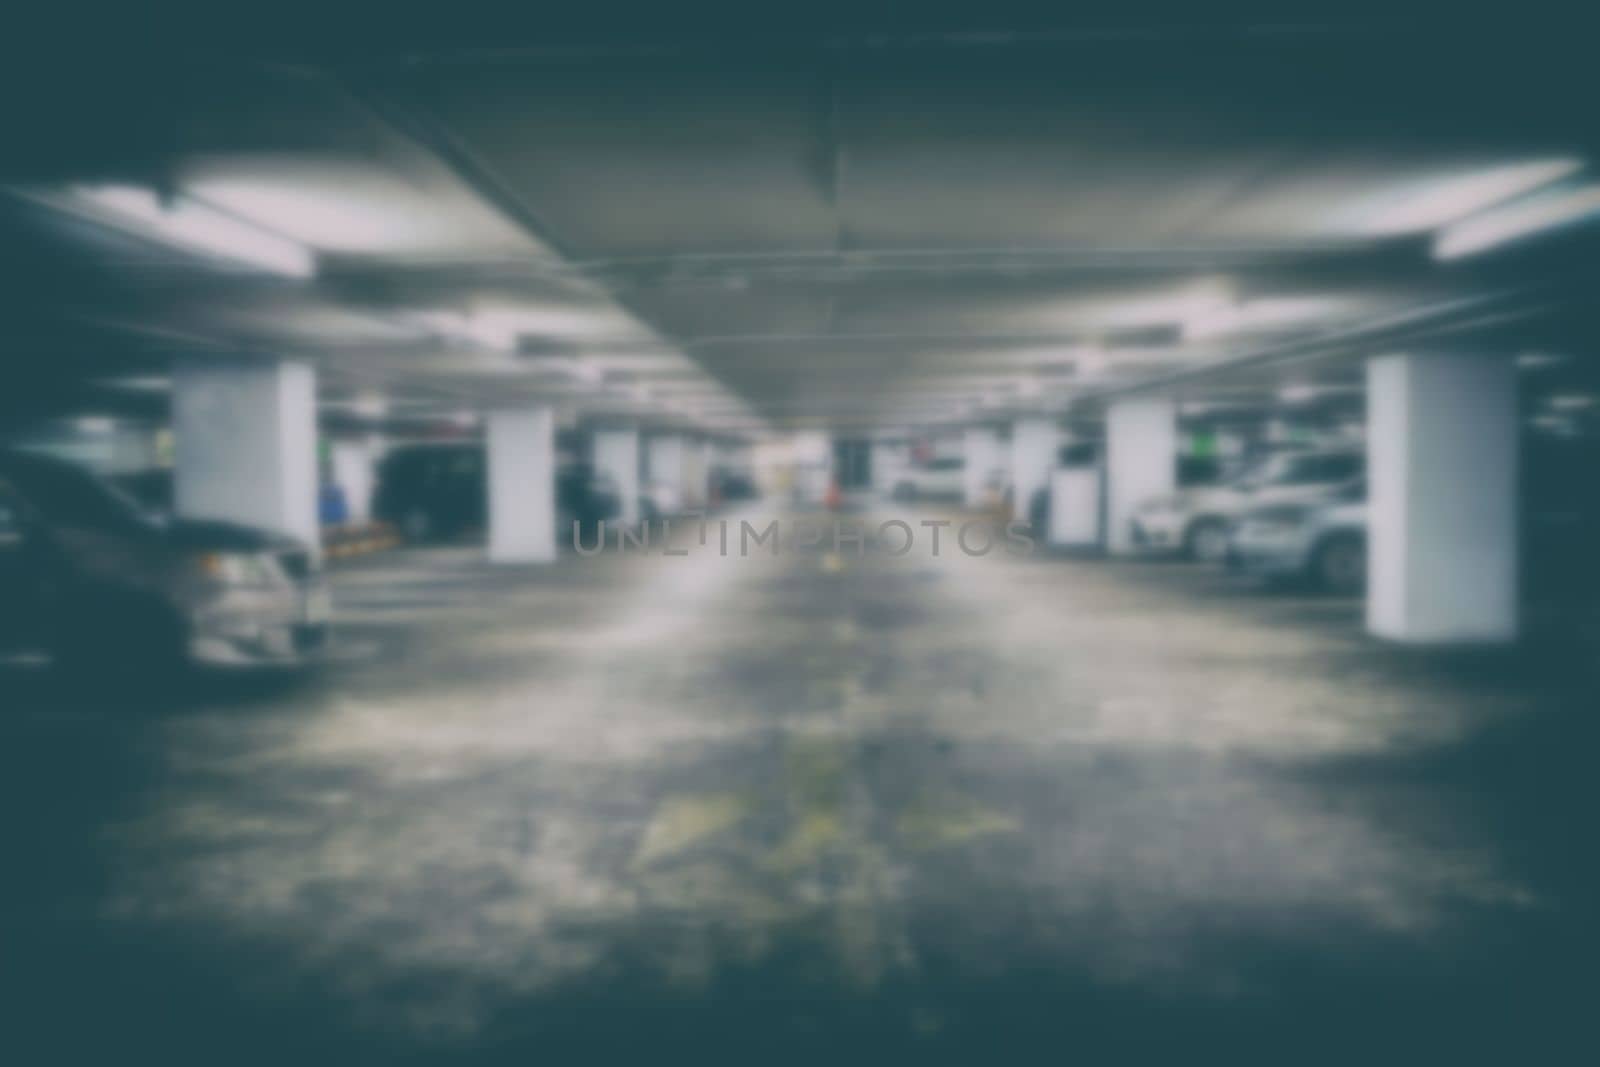 Blurred Image of Underground Car Parking.